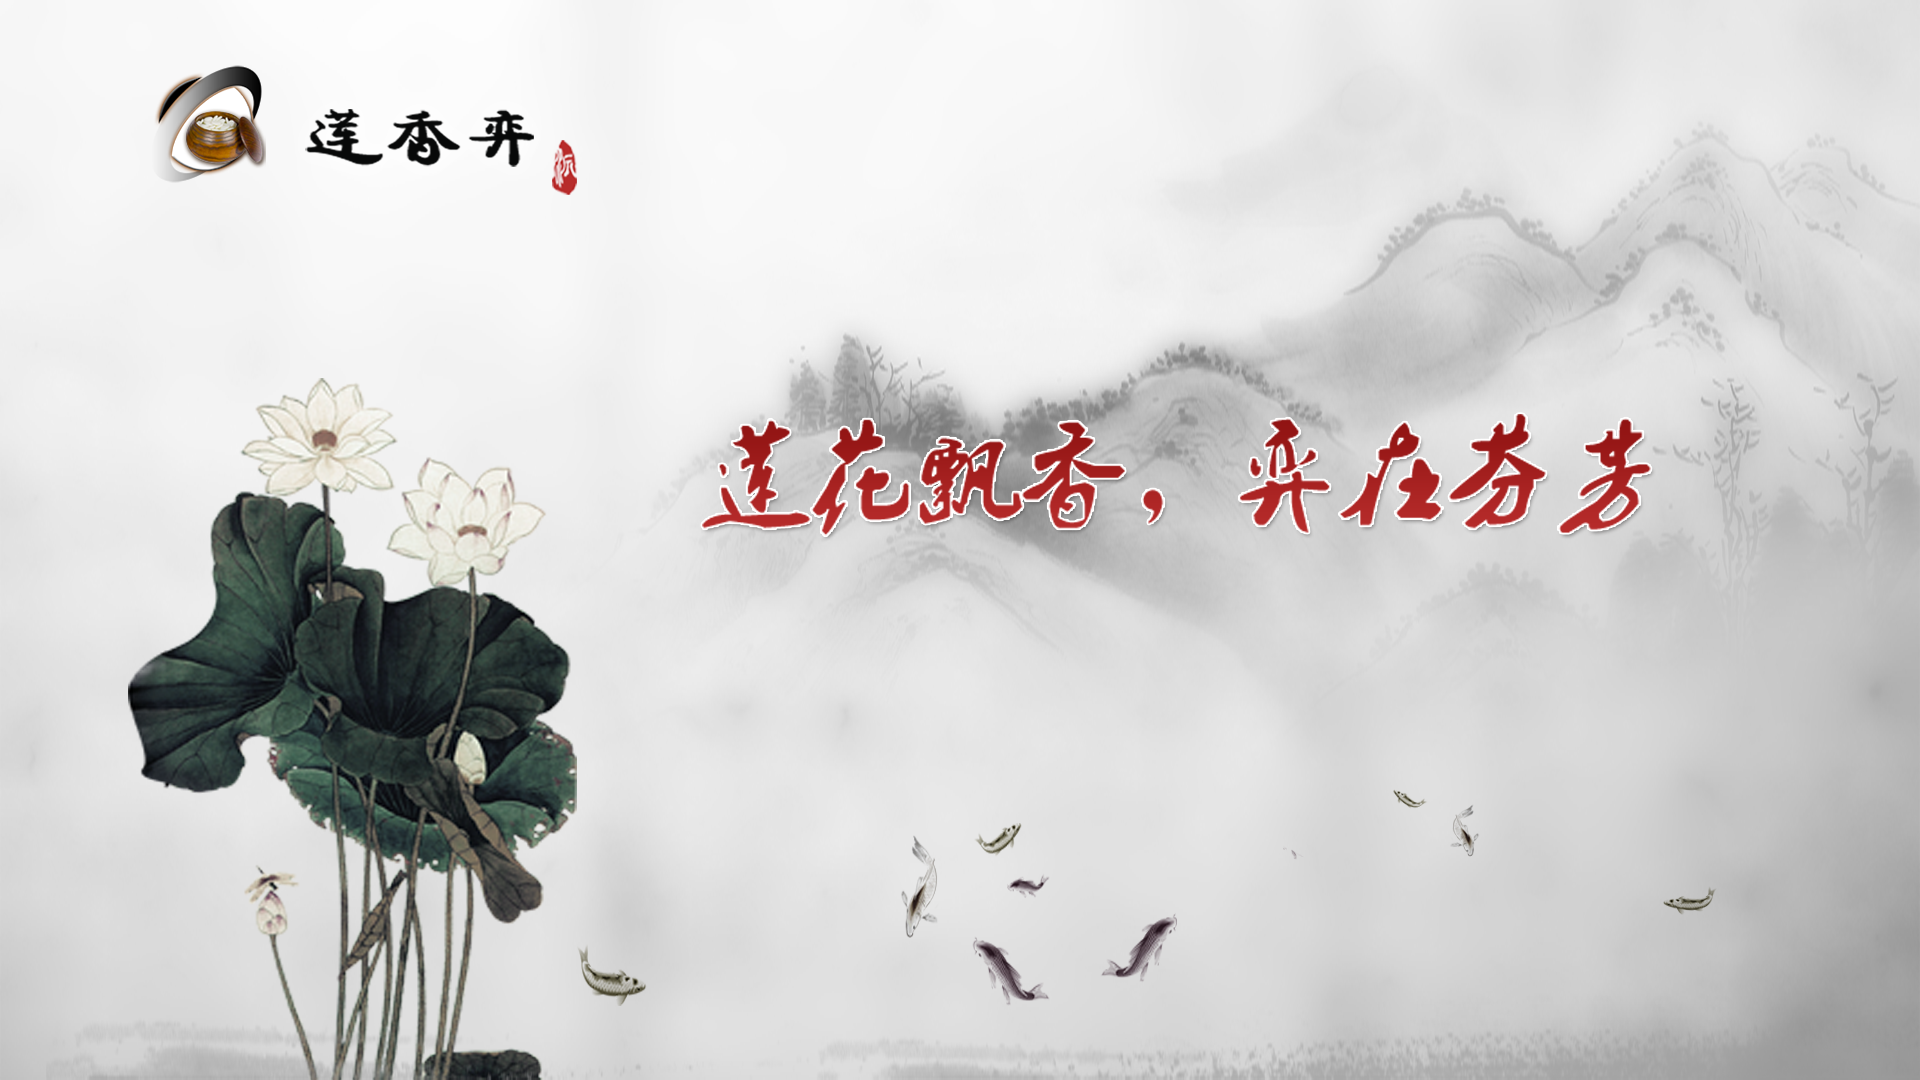 Banner of リアン・シャンが囲碁をする 8.20.26